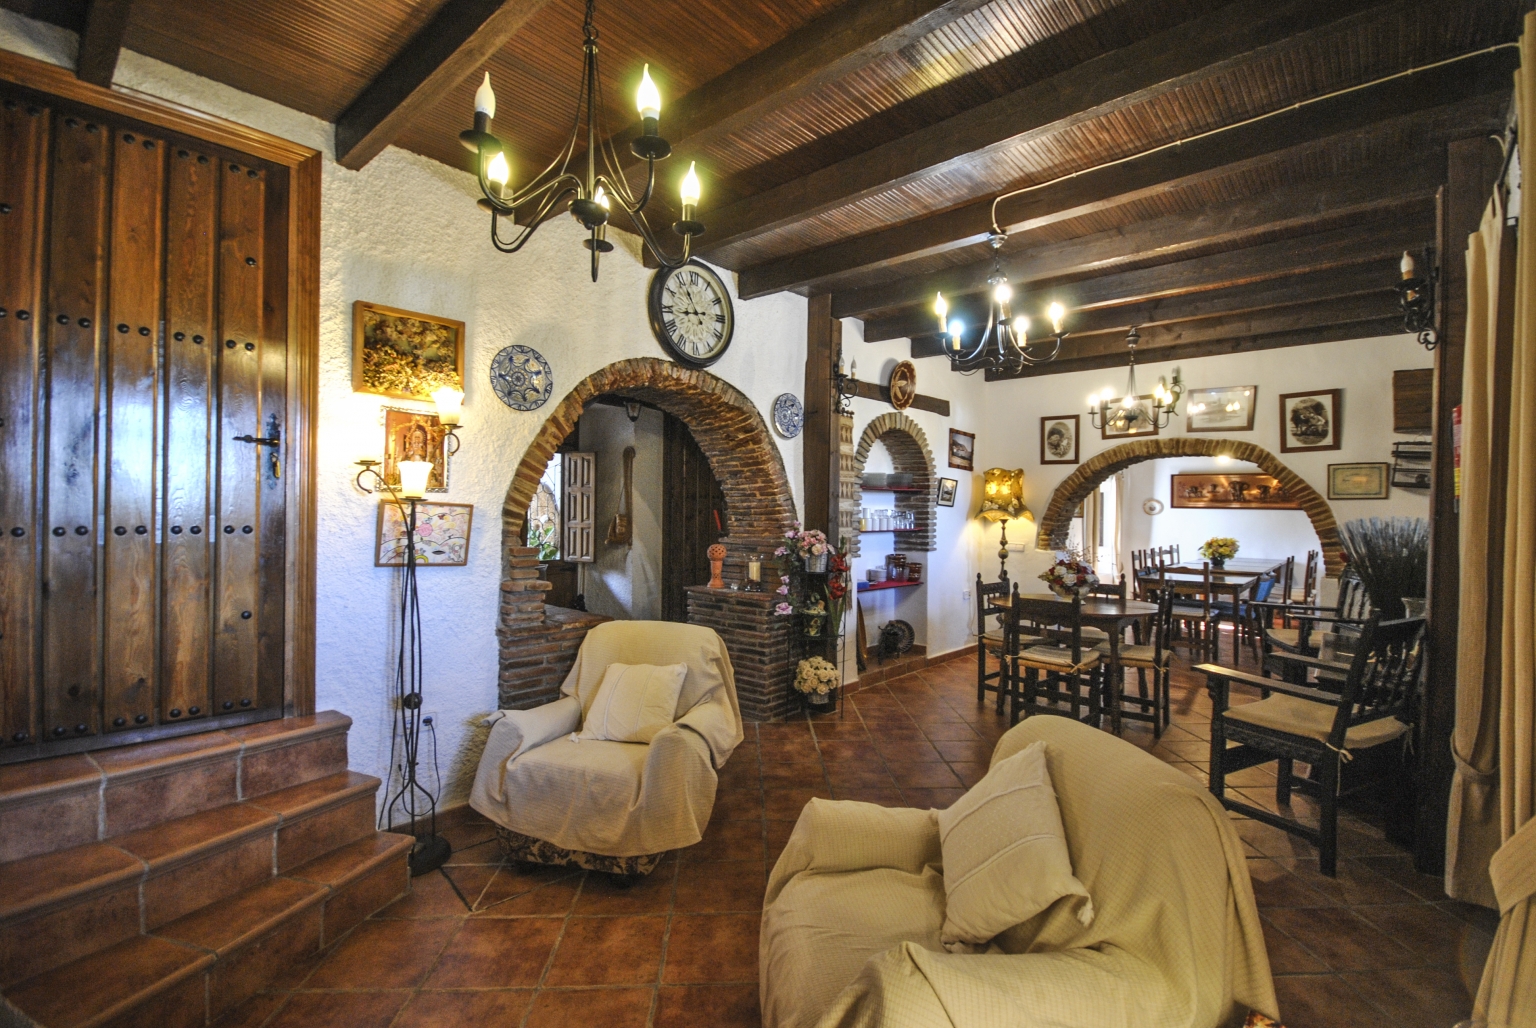 Salón, comedor de uso común para los huéspedes y clientes del alojamiento Cortijo Las Monjas. Zona con mucho caracter arquitectónico e historia de tiempos pasados